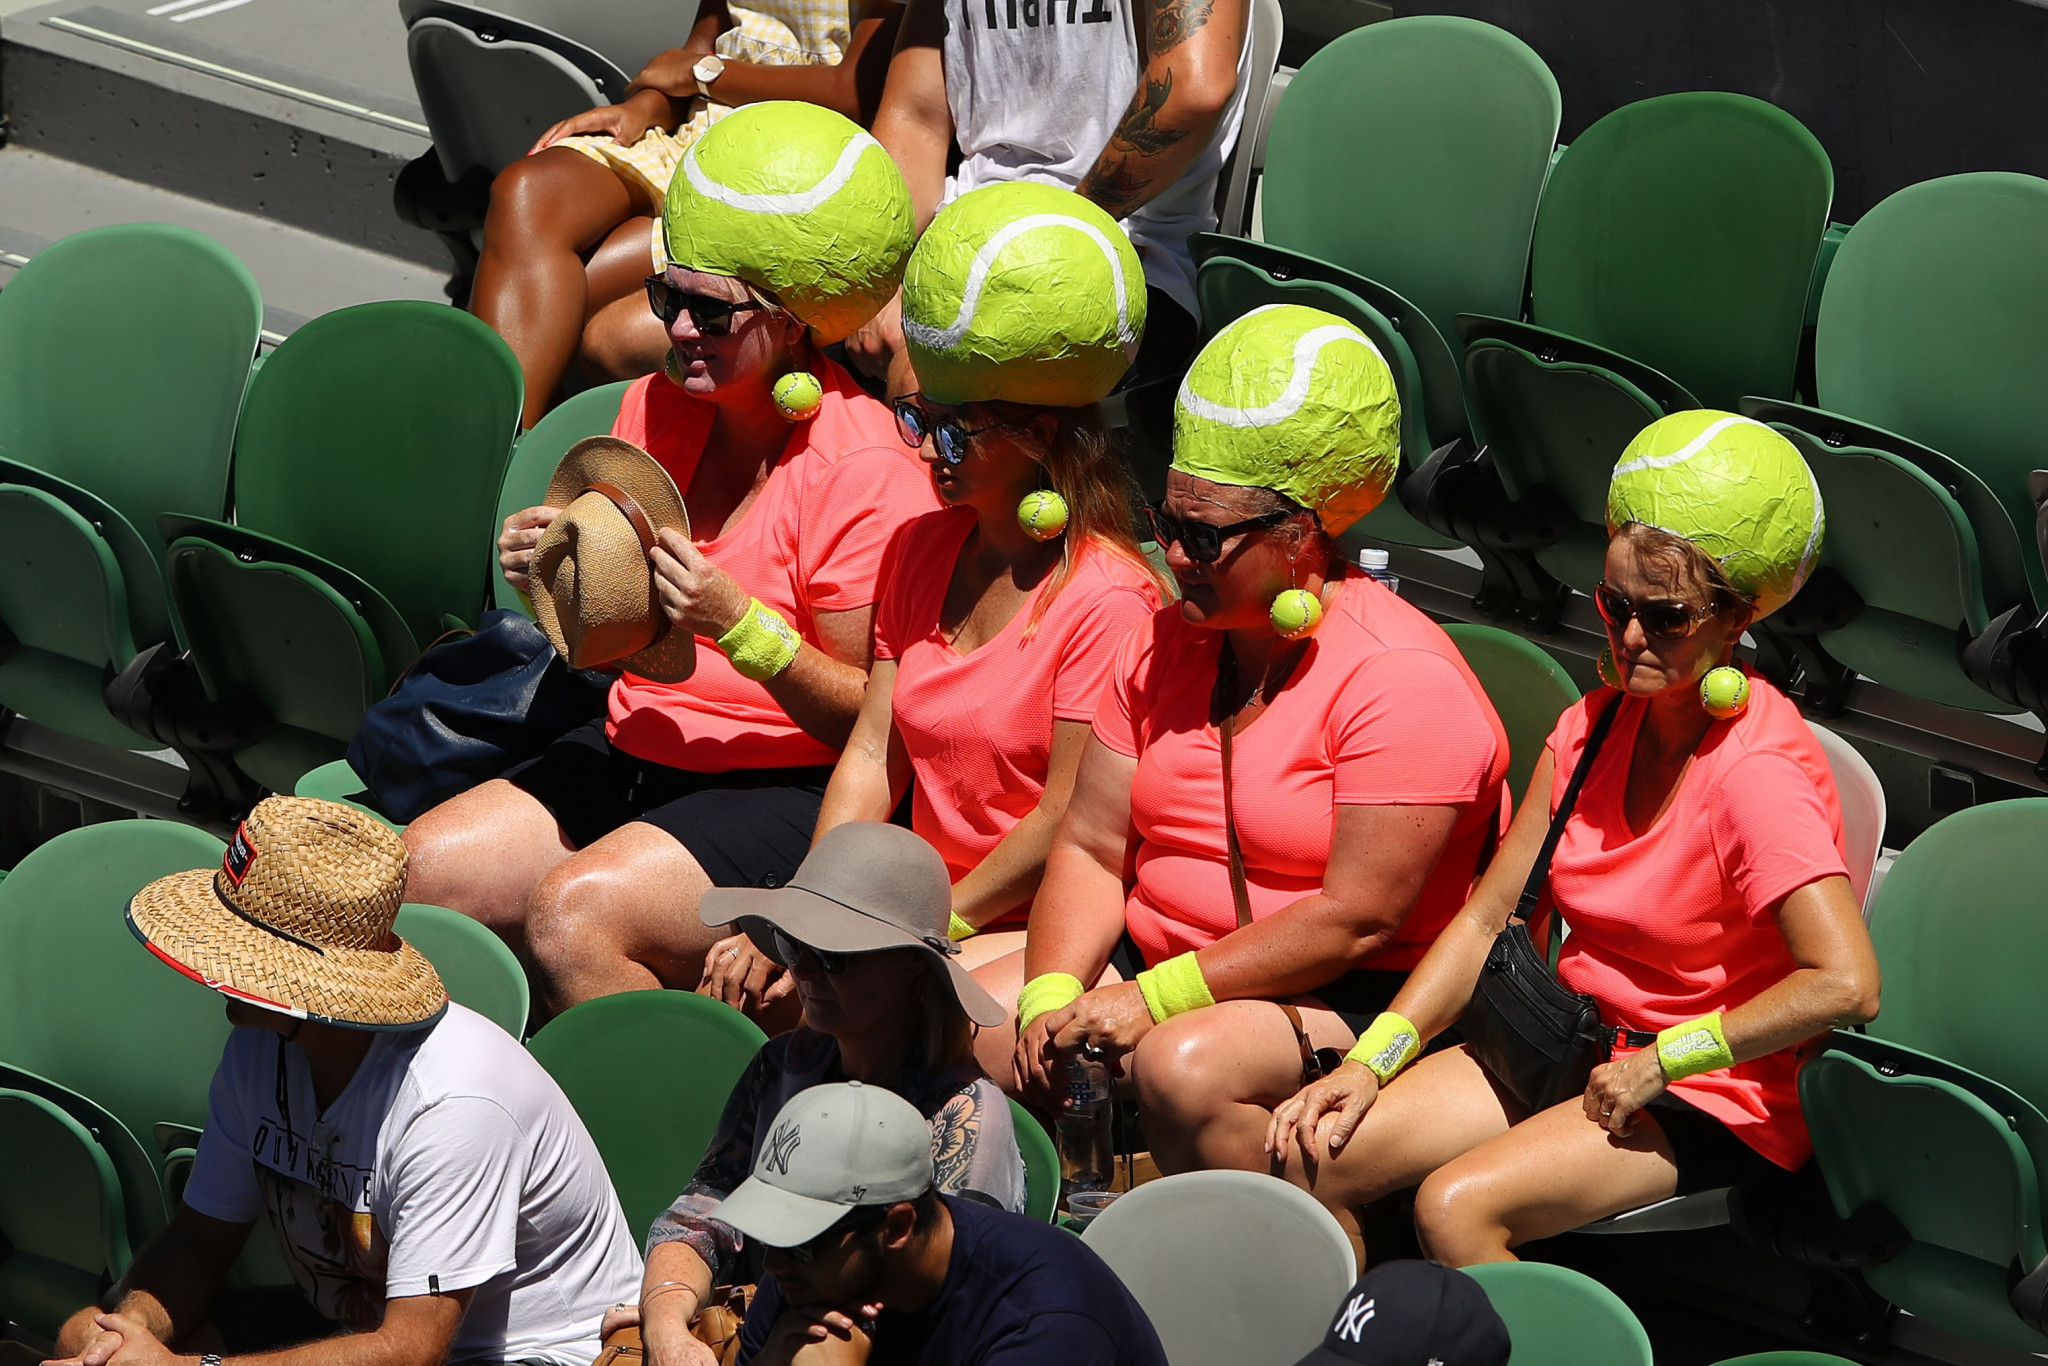 Spectators in fancy dress at the Australian Open ©Getty Images